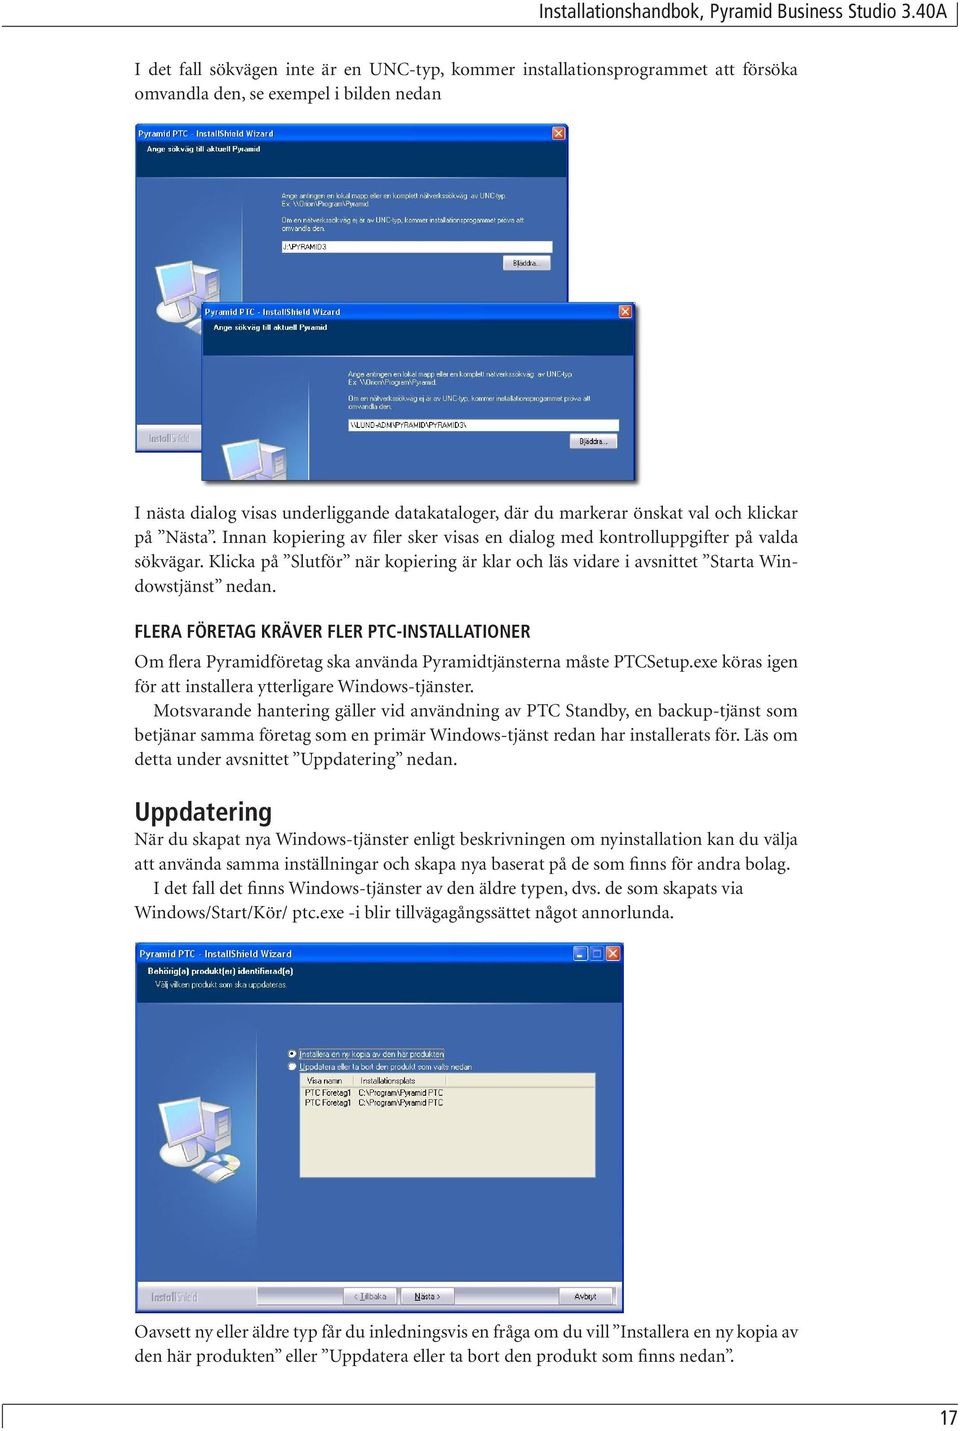 Klicka på Slutför när kopiering är klar och läs vidare i avsnittet Starta Windowstjänst nedan.